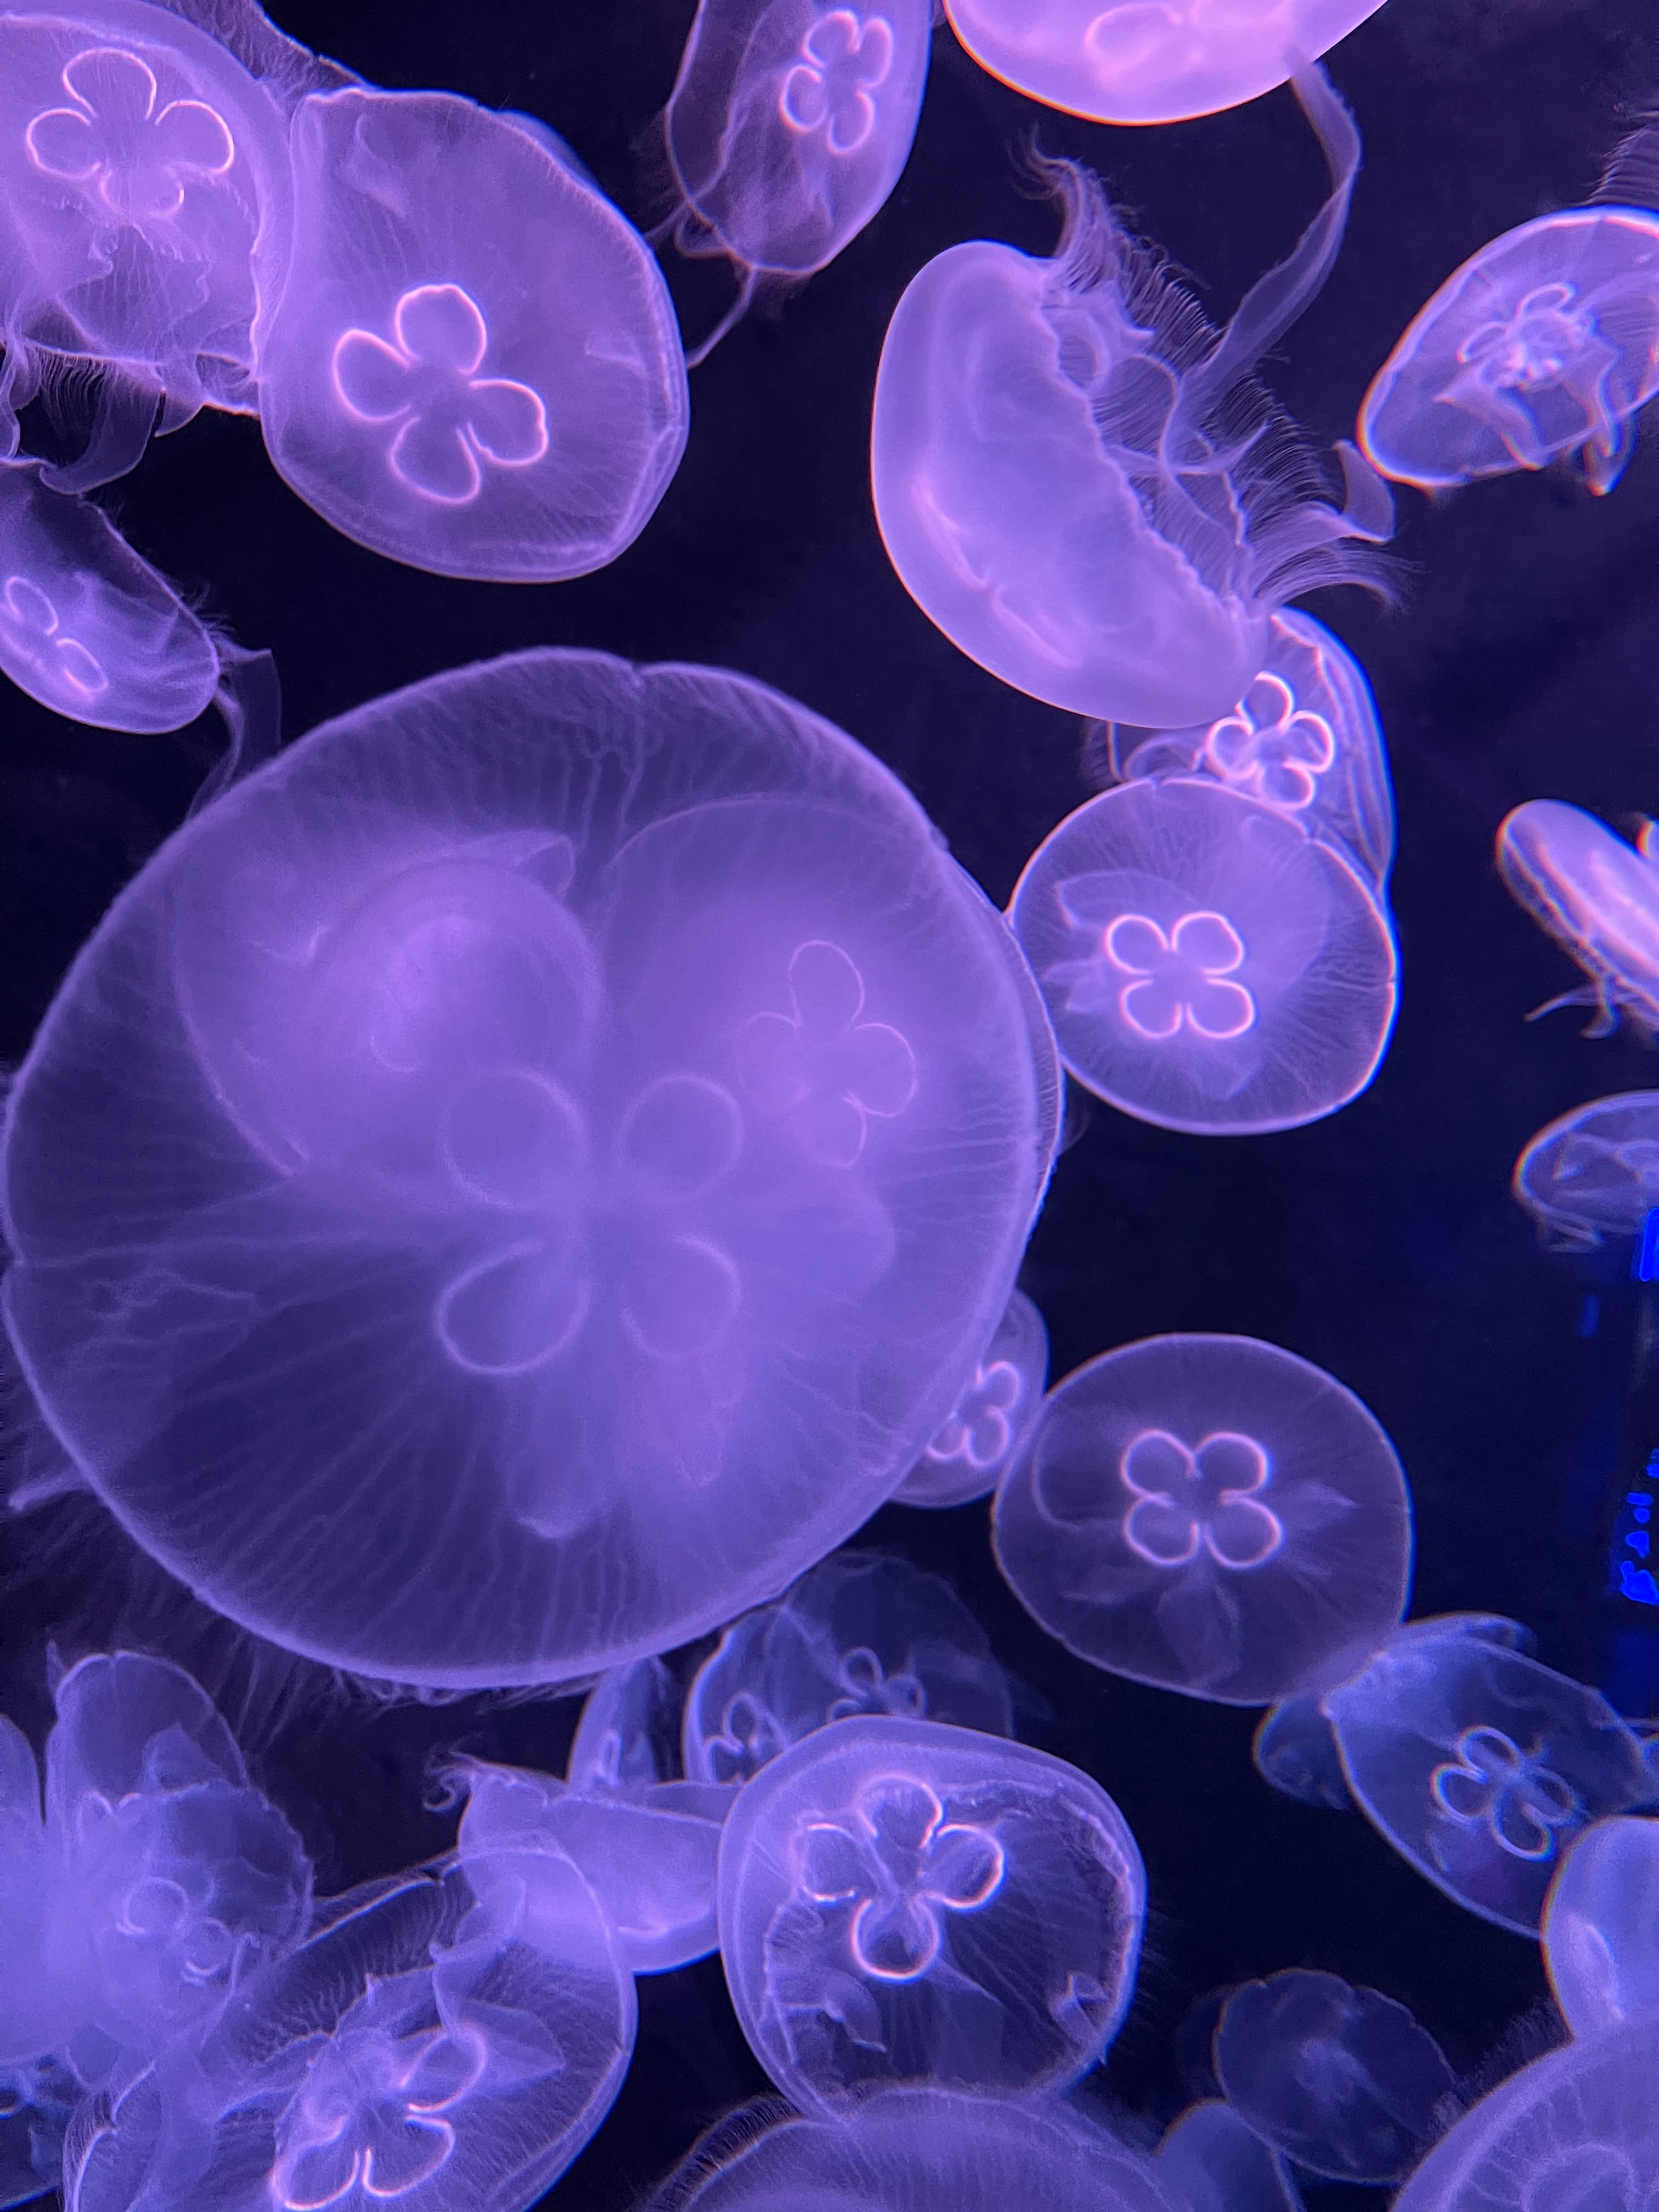 jellyfish, underwater, animals, water, violet, purple, under water cellphone